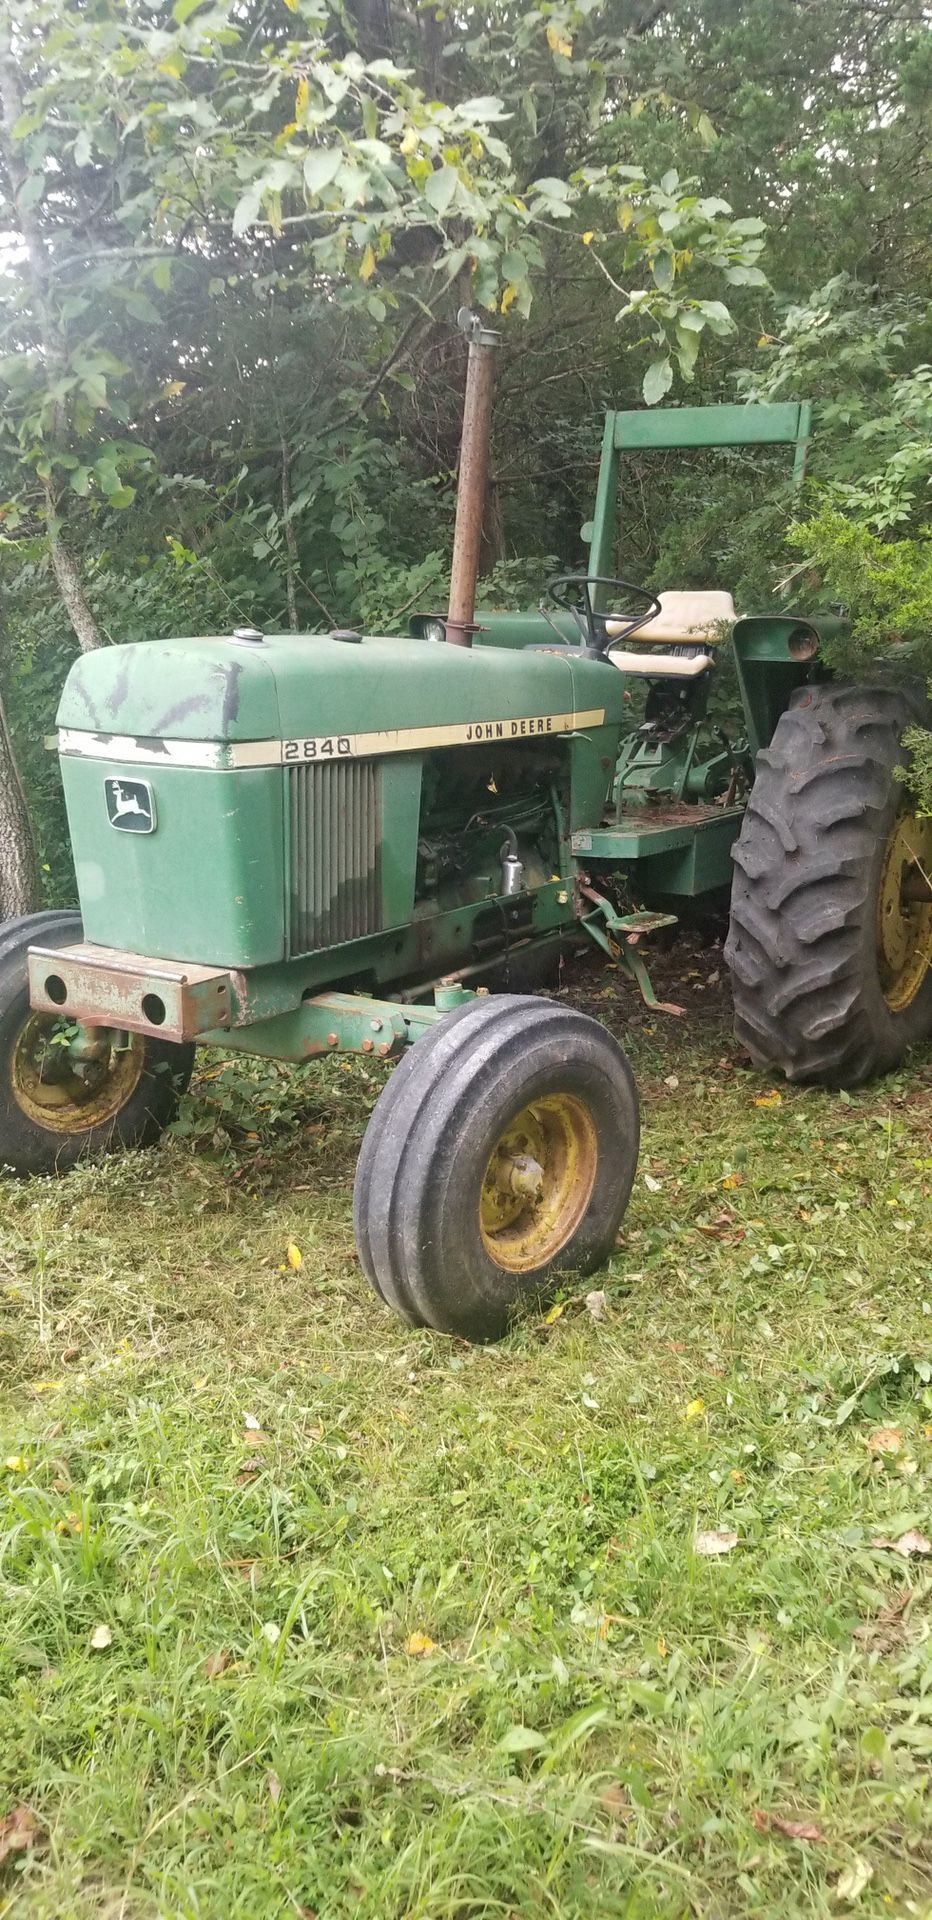 2840 John Deer tractor